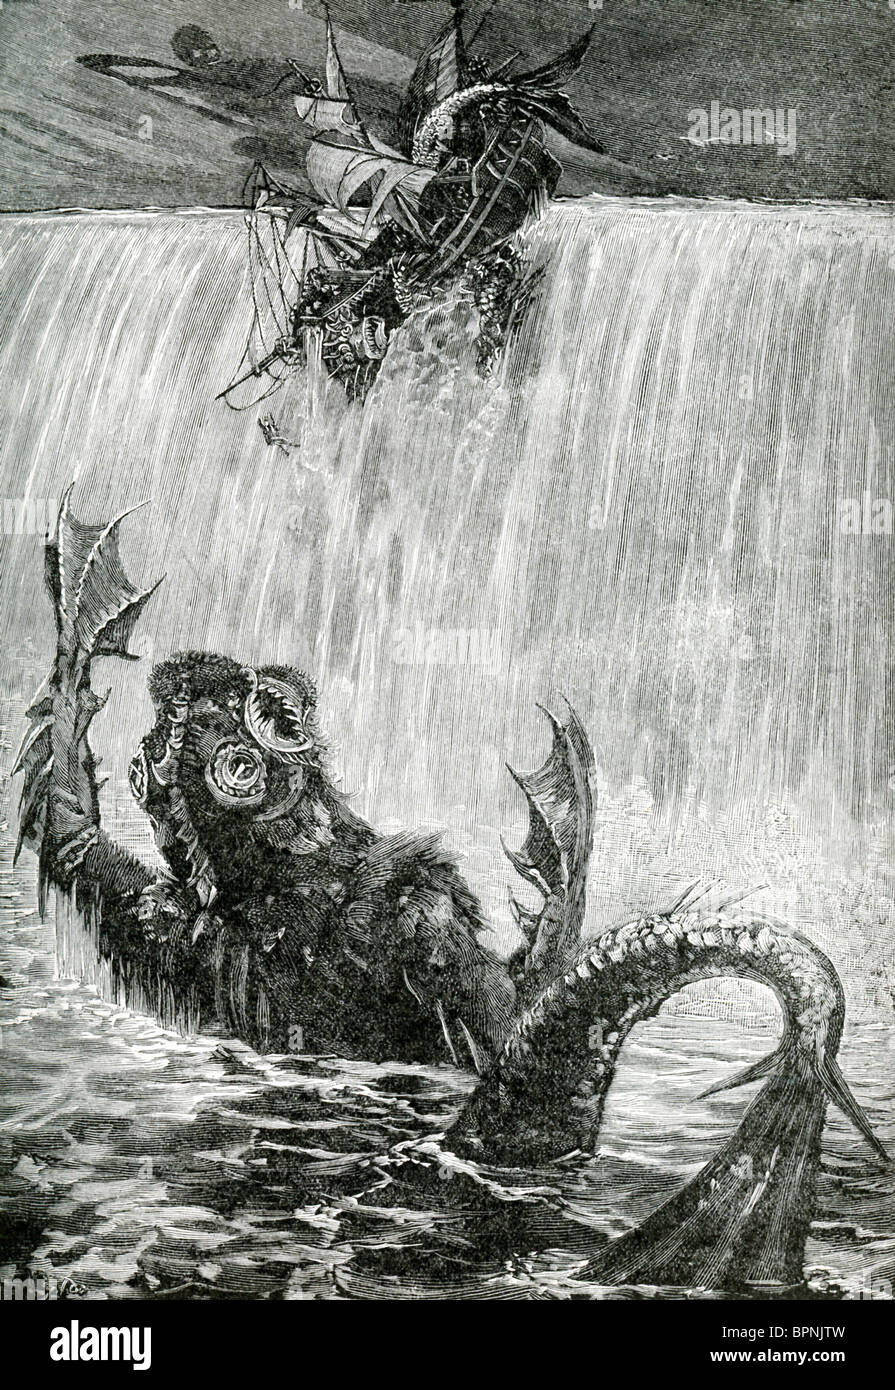 Eine schreckliche Kreatur geht, greifen mit ihren Schwimmhäuten Arme/ein Schiff Hände, die umfallen, was zu einem Wasserfall zu sein scheint. Stockfoto